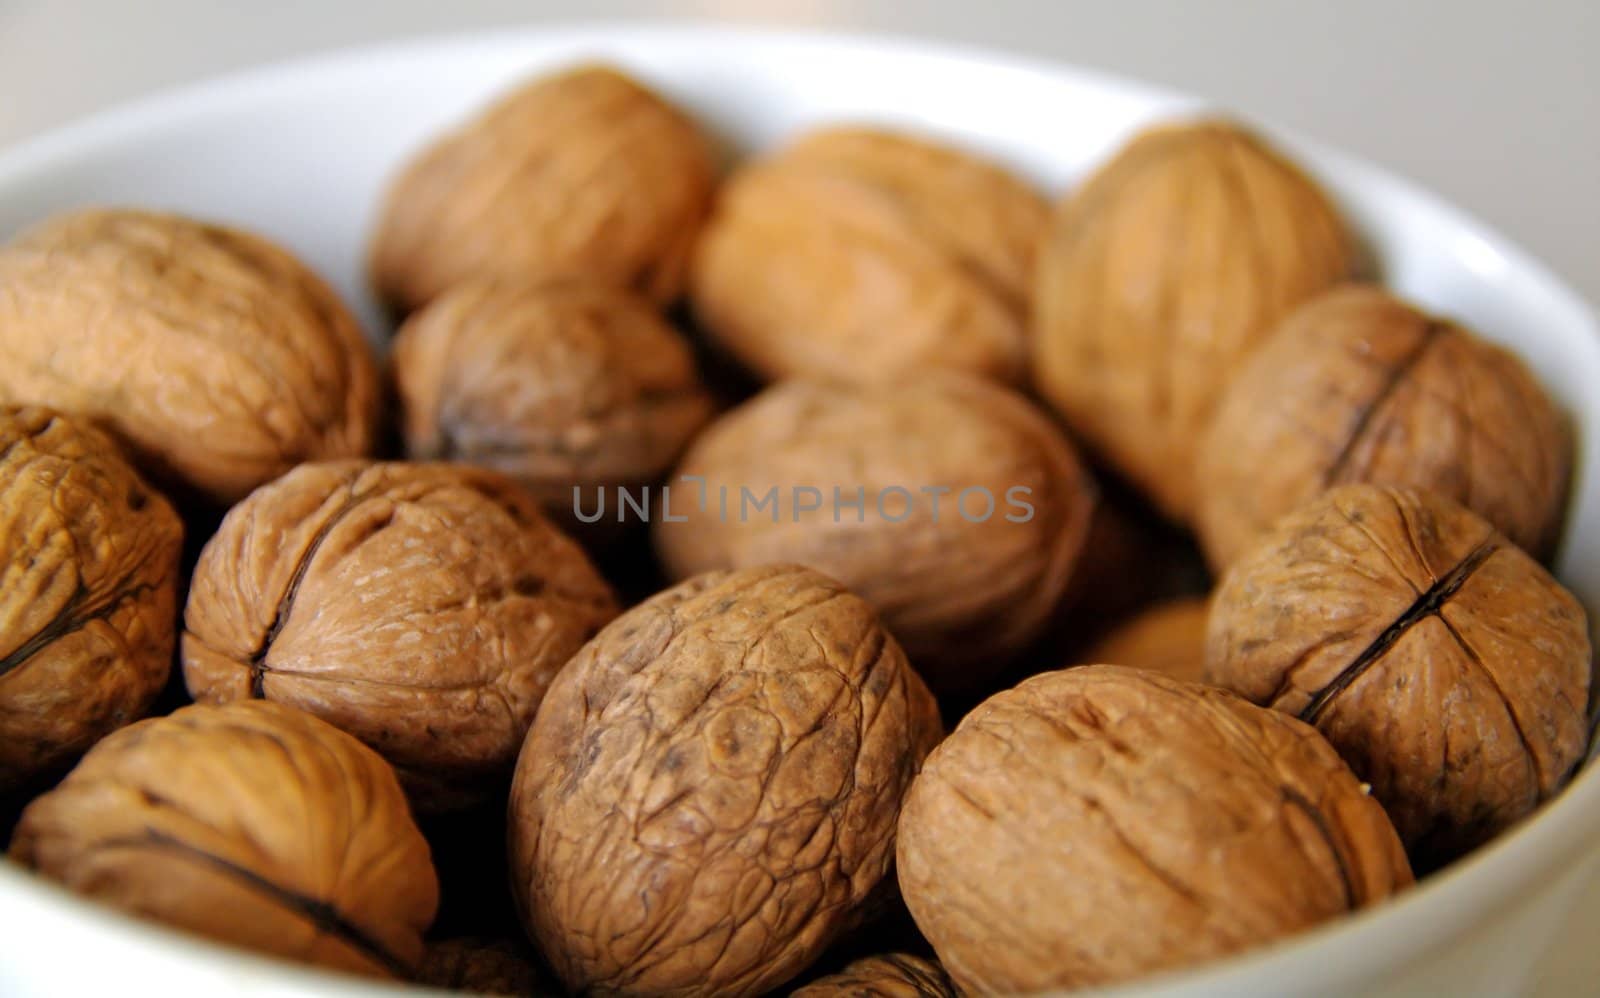 Walnuts in a bowl by baggiovara